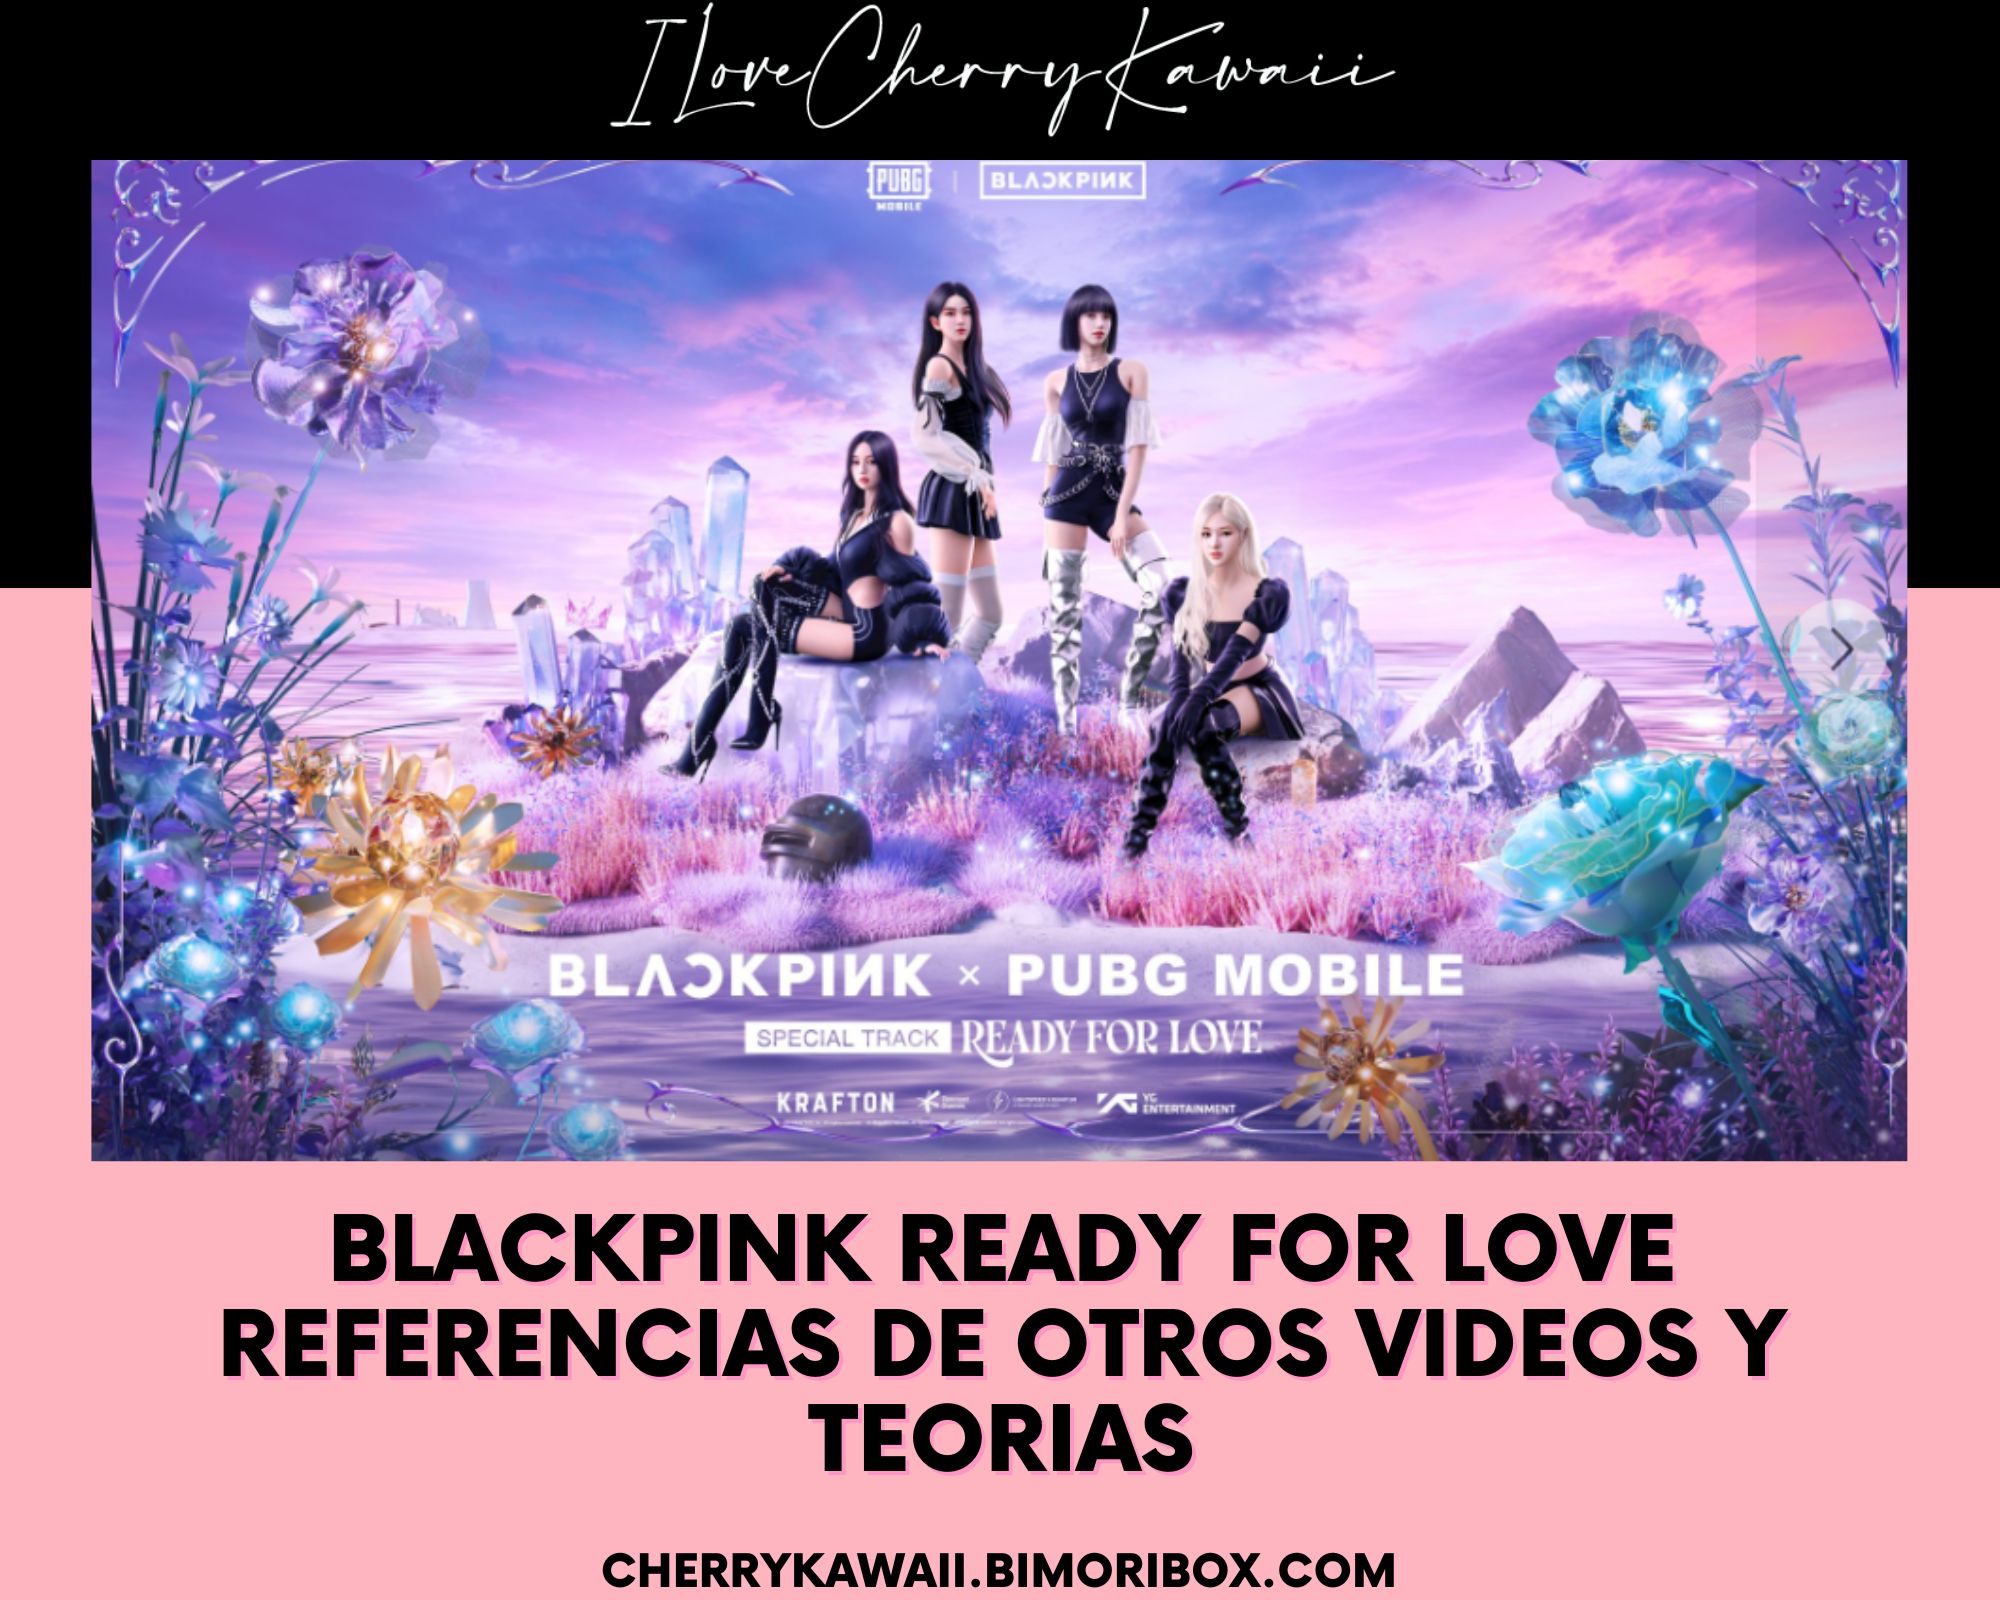 BLACKPINK READY FOR LOVE REFERENCIAS MV Y TEORIAS 